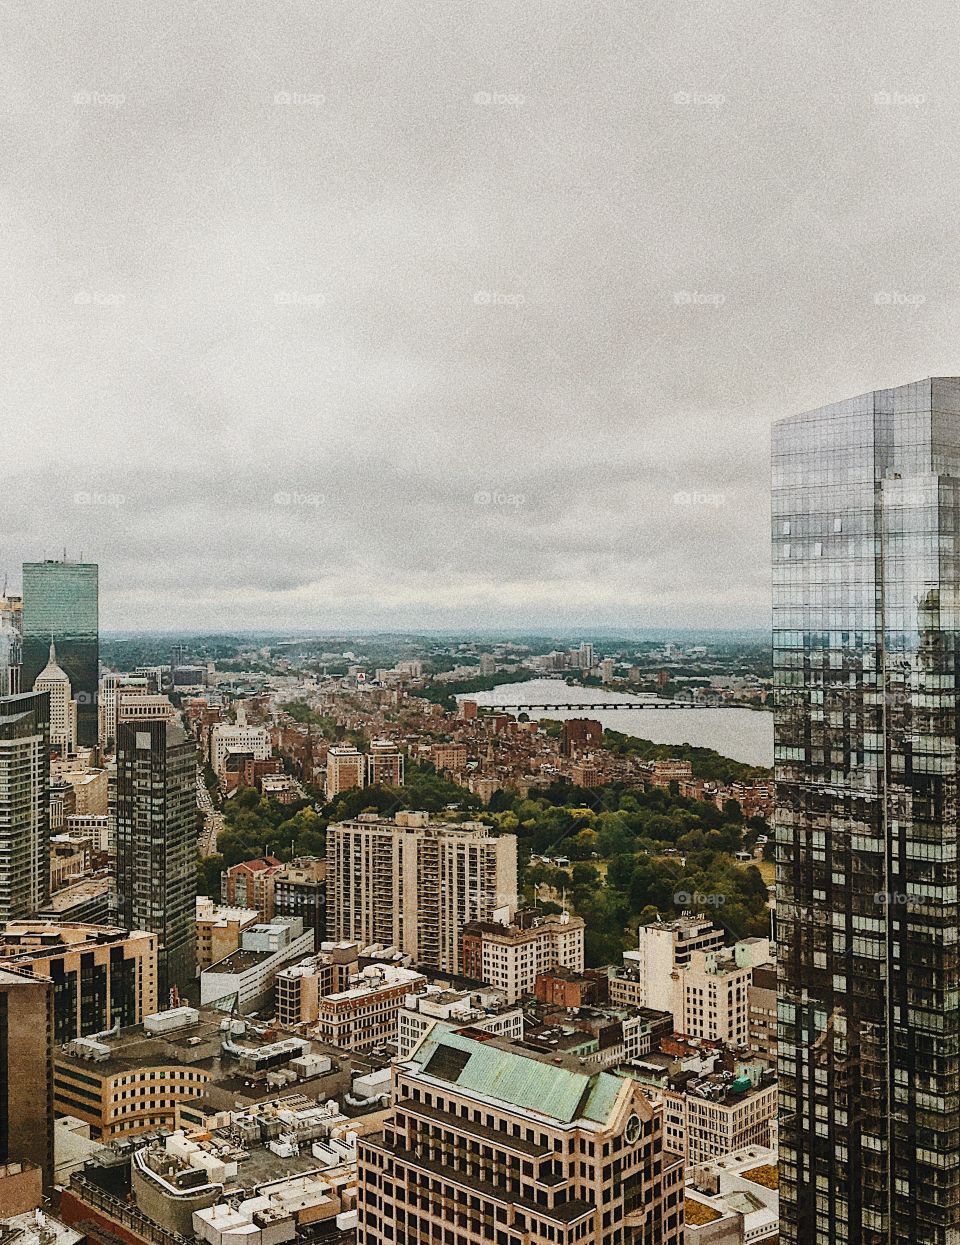 Cloudy Skyline of Boston, Massachusetts